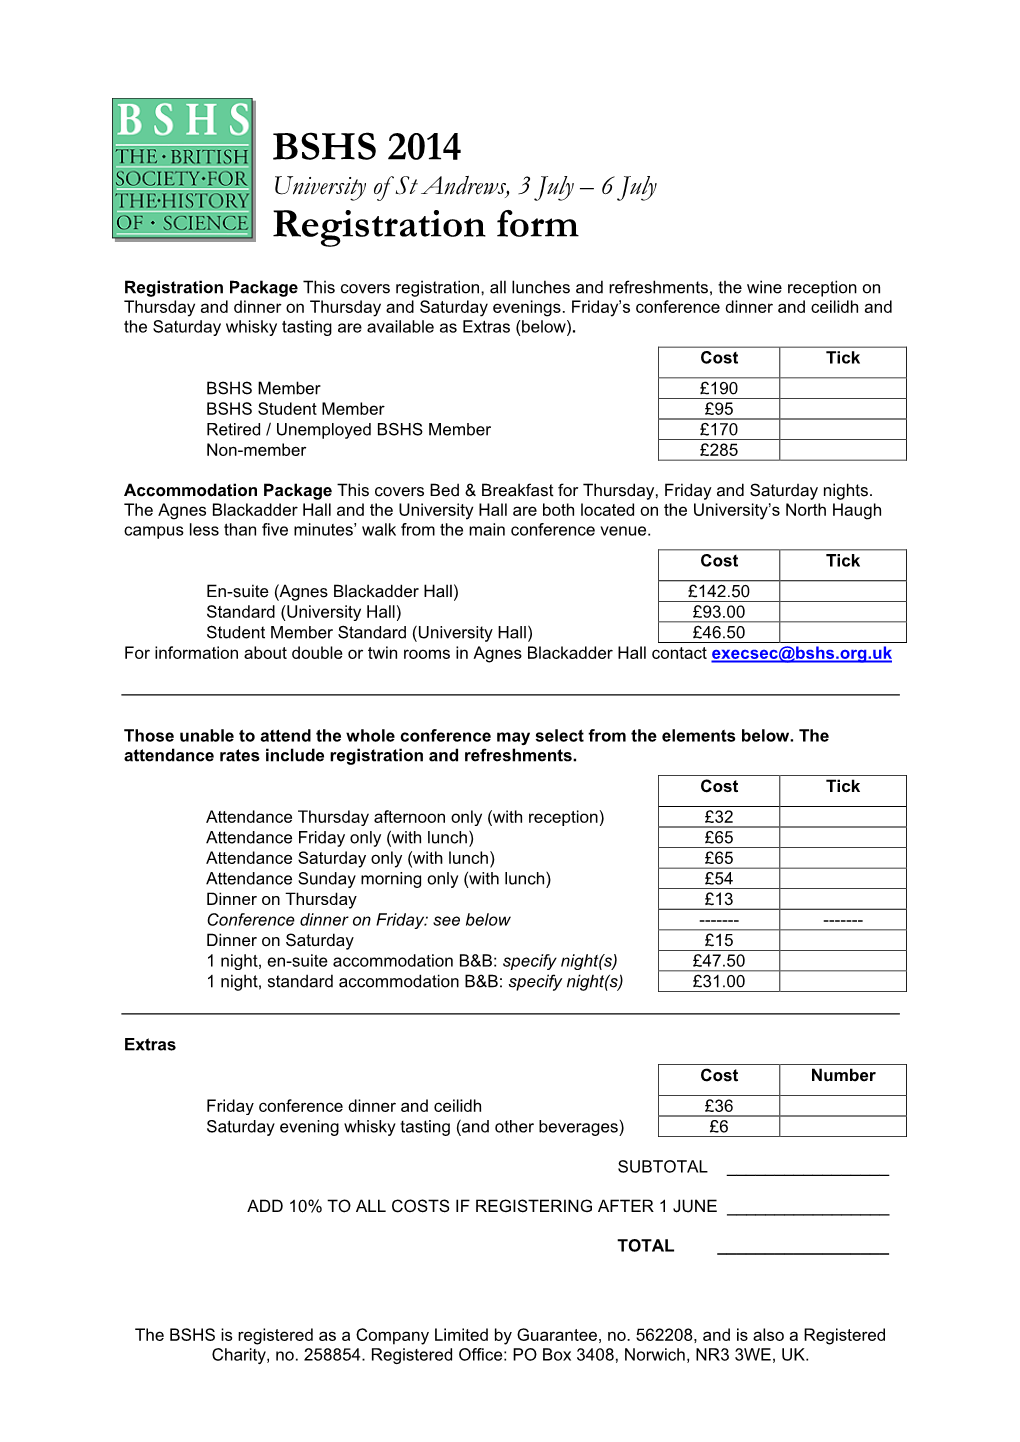 BSHS 2014 Registration Form